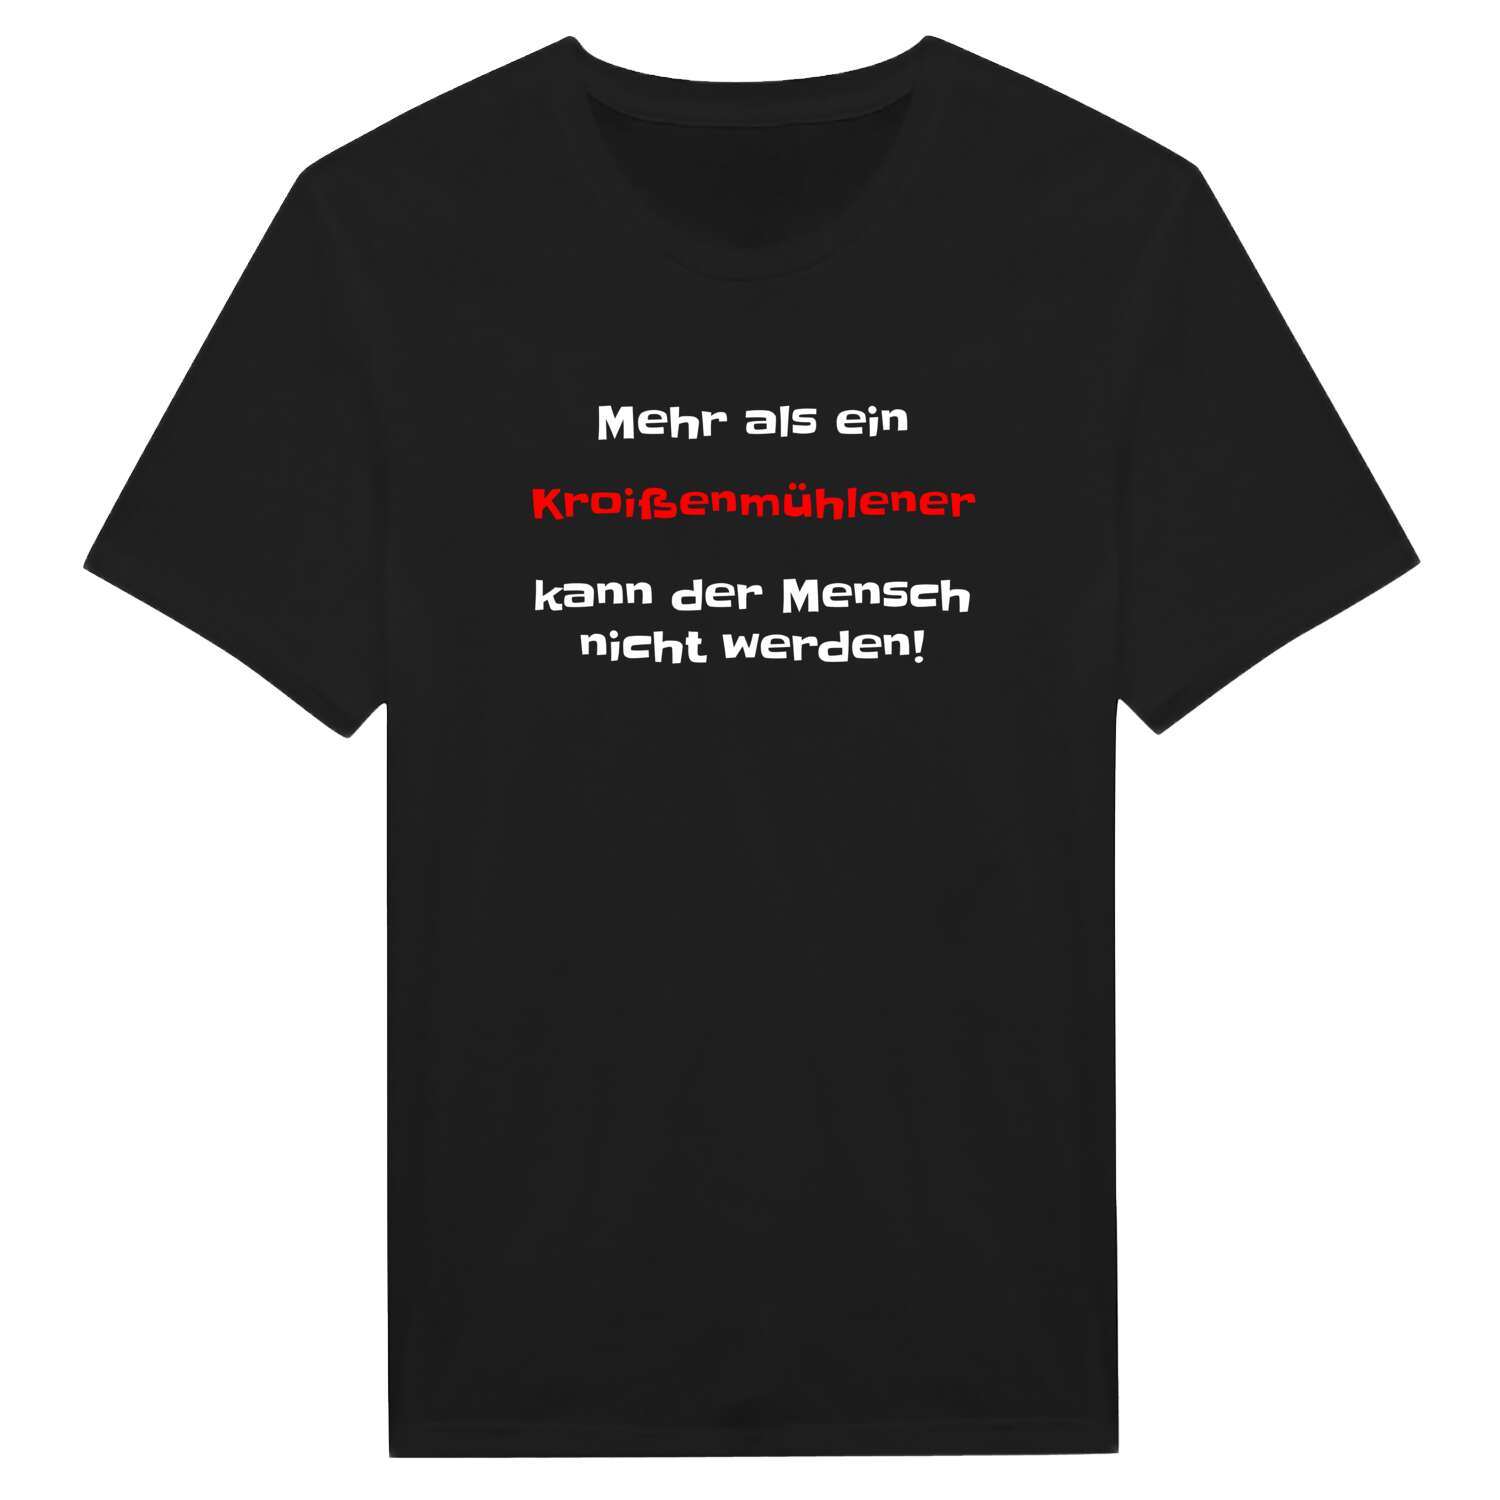 Kroißenmühle T-Shirt »Mehr als ein«